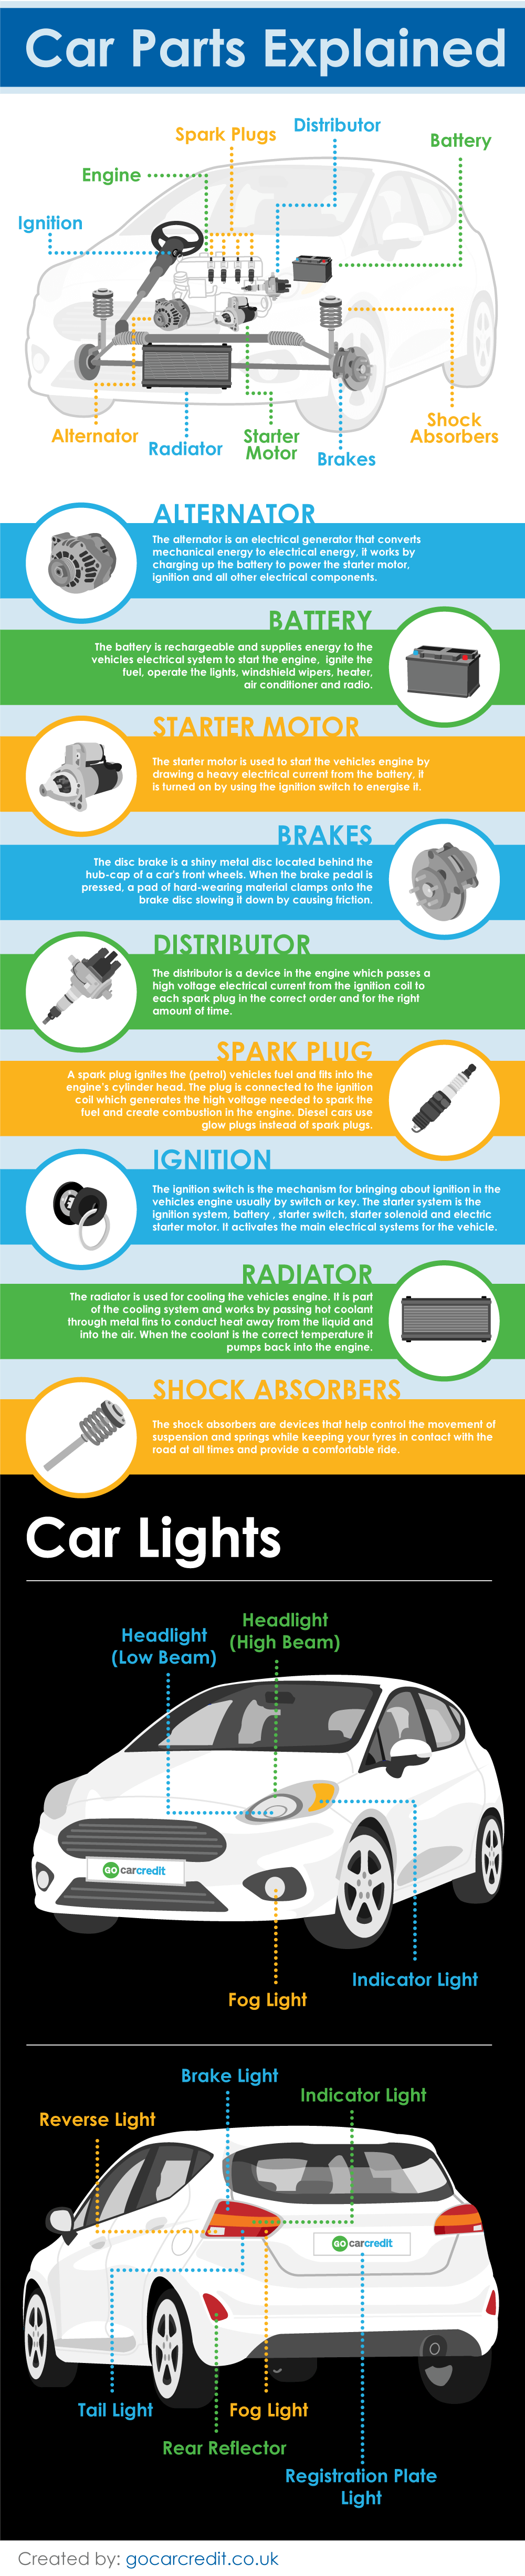 Car Parts Explained